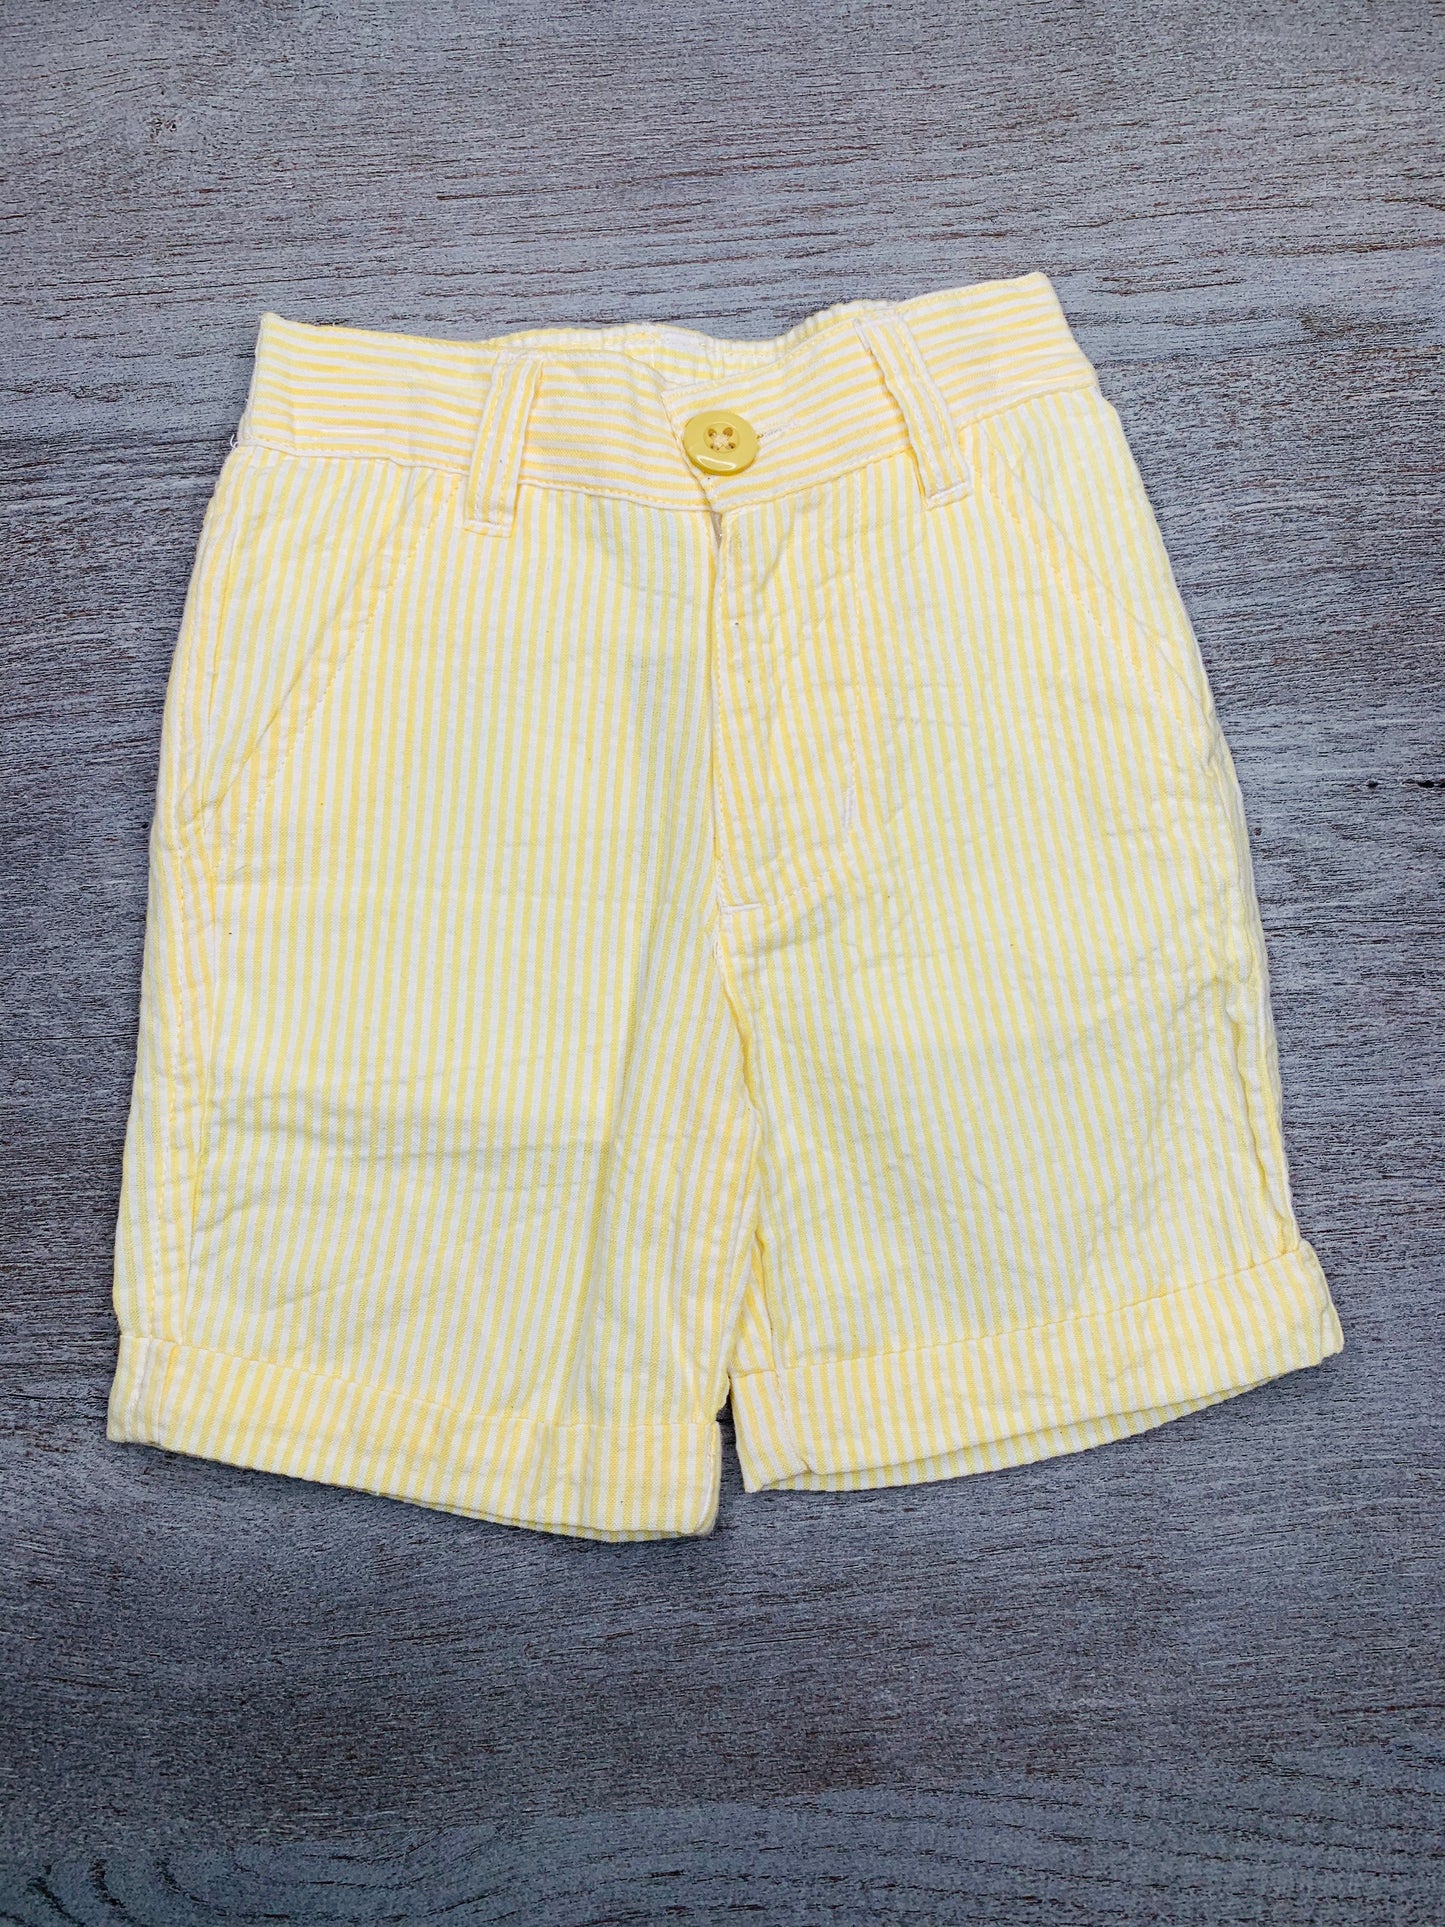 Yellow Seersucker Shorts*